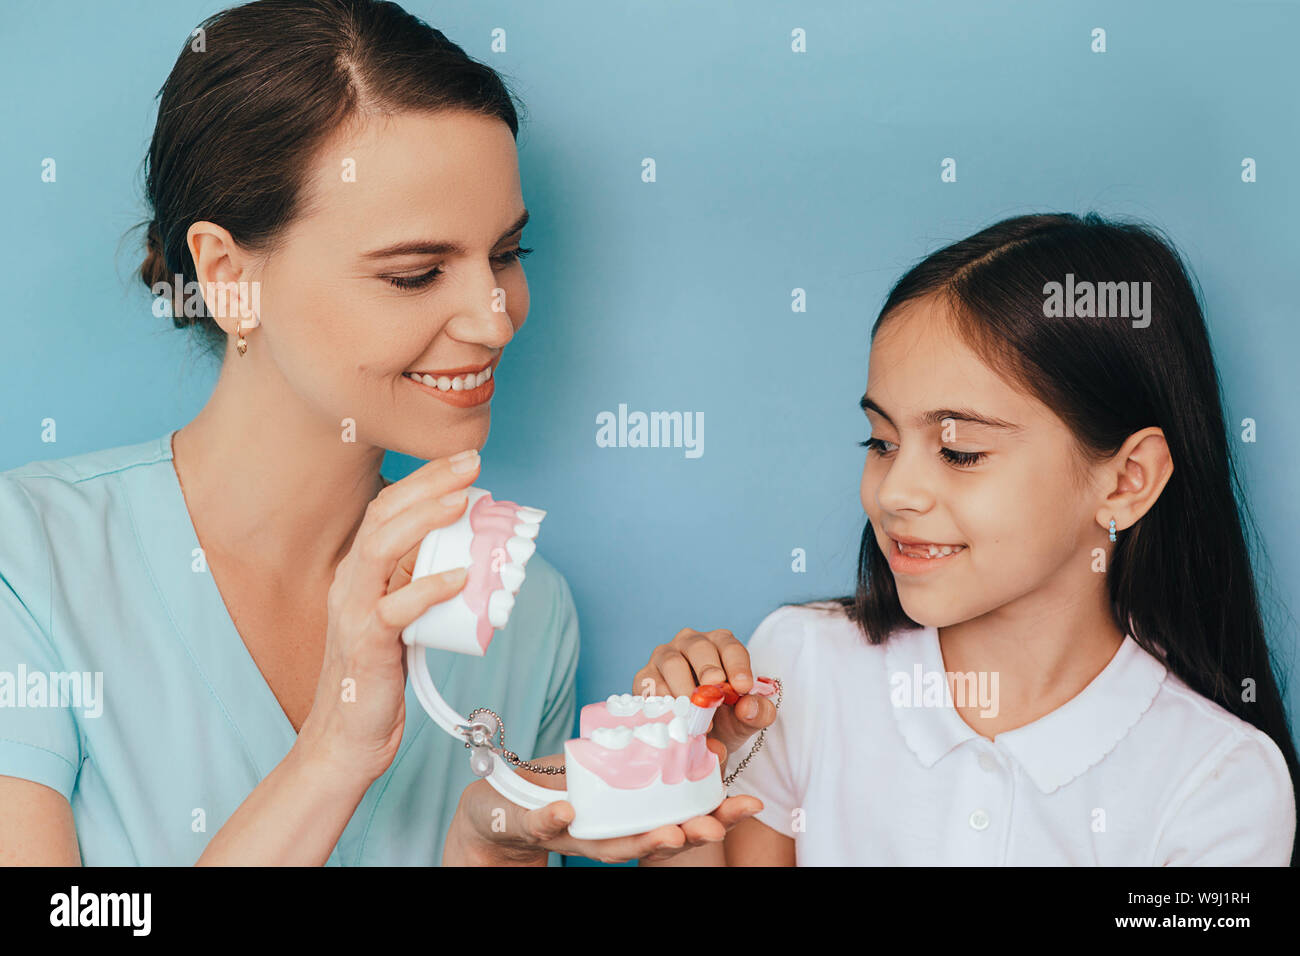 Razza mista ragazza che mostra come spazzola denti al suo dentista, durante un appuntamento dentale Foto Stock